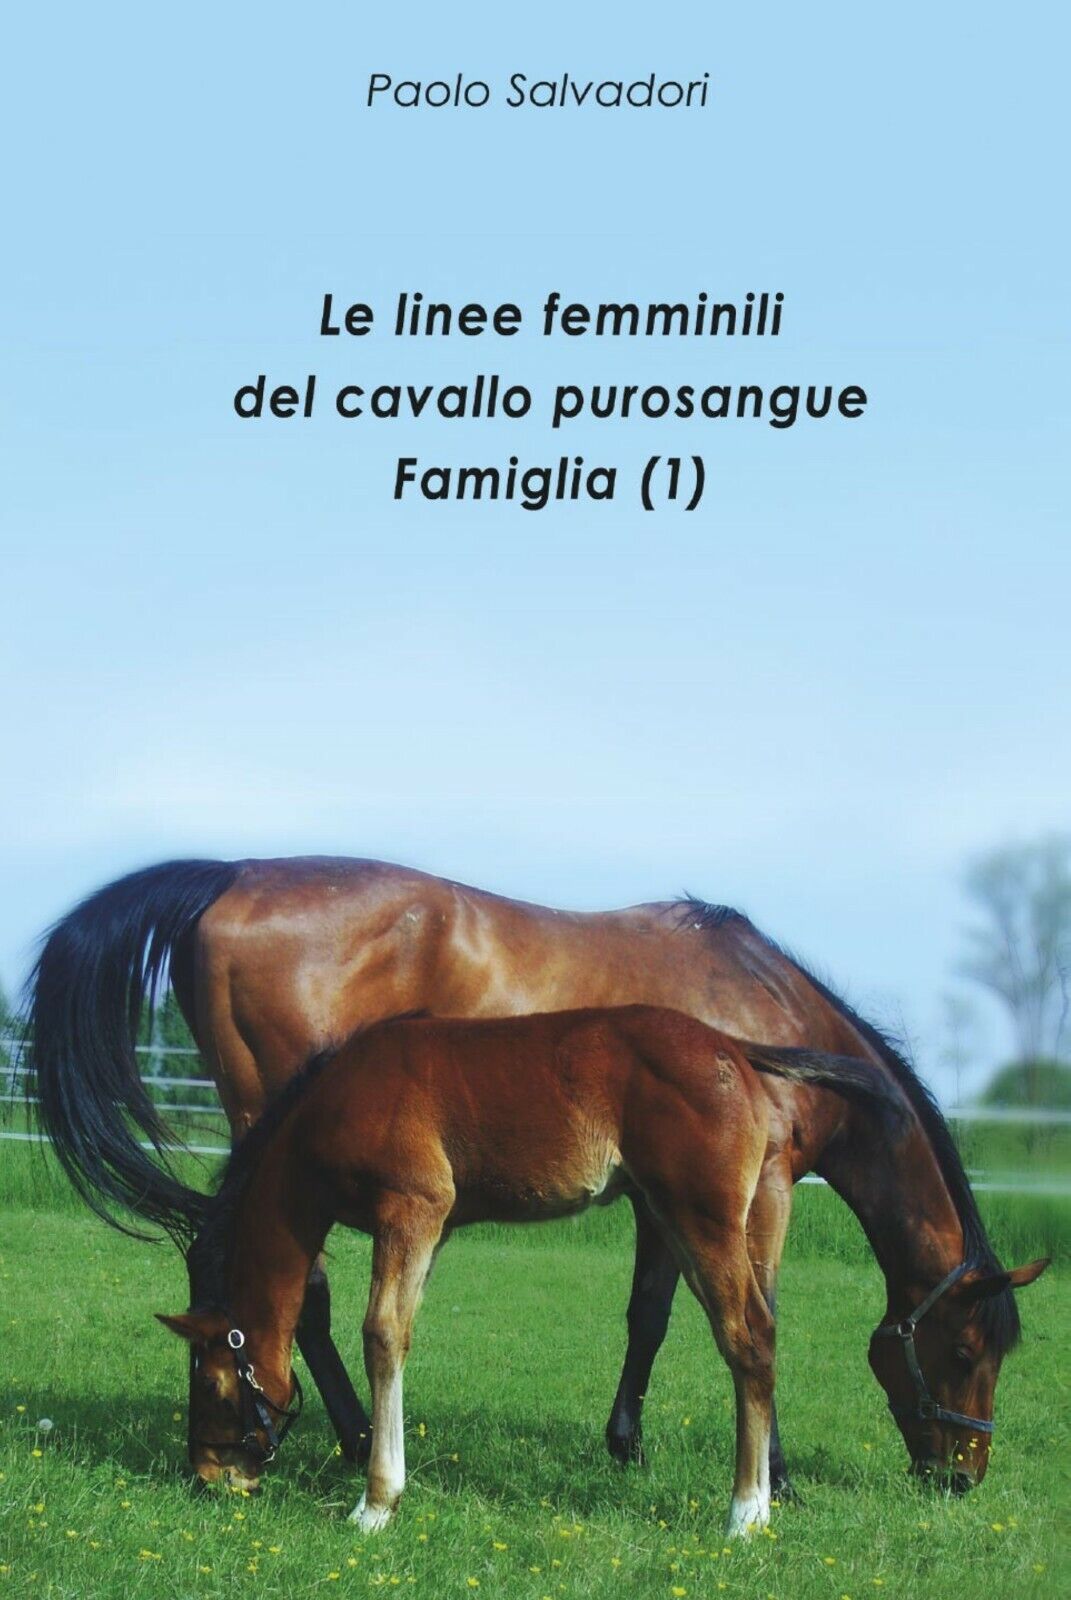 Le linee femminili del cavallo purosangue. Famiglia (1) di Paolo Salvadori,  201